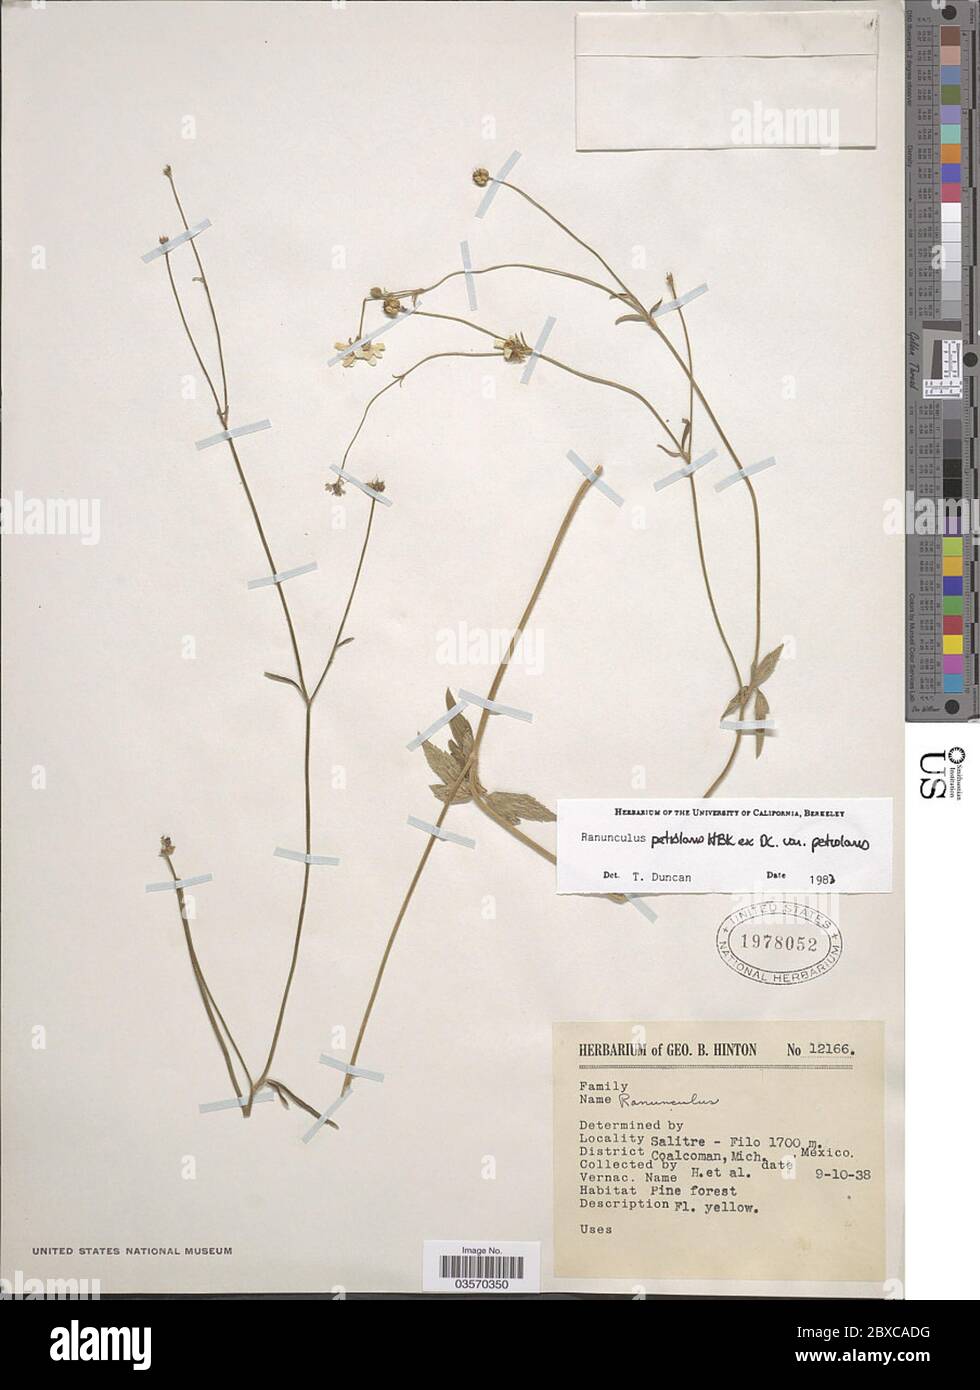 Ranunculus petiolaris Kunth ex DC var petiolaris Ranunculus petiolaris Kunth ex DC var petiolaris. Stock Photo